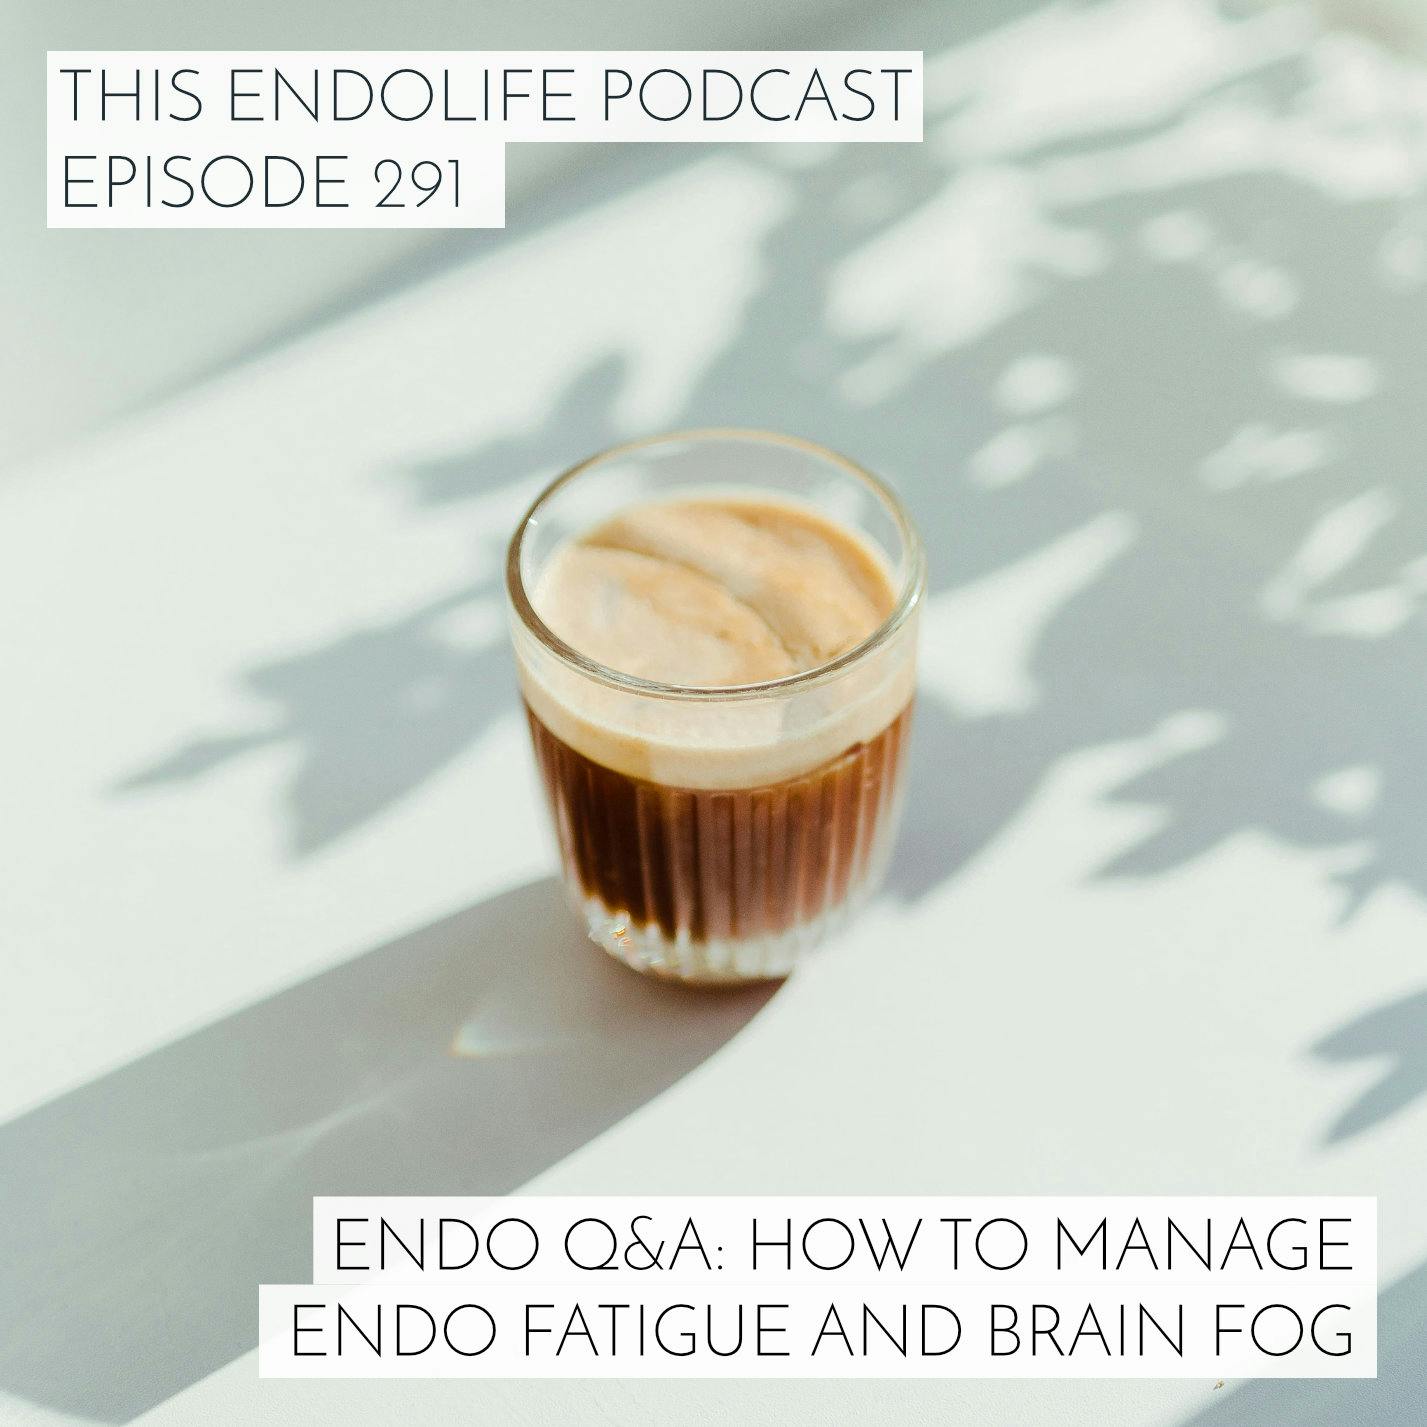 Endo Q&A: How to Manage Endo Fatigue and Brain Fog